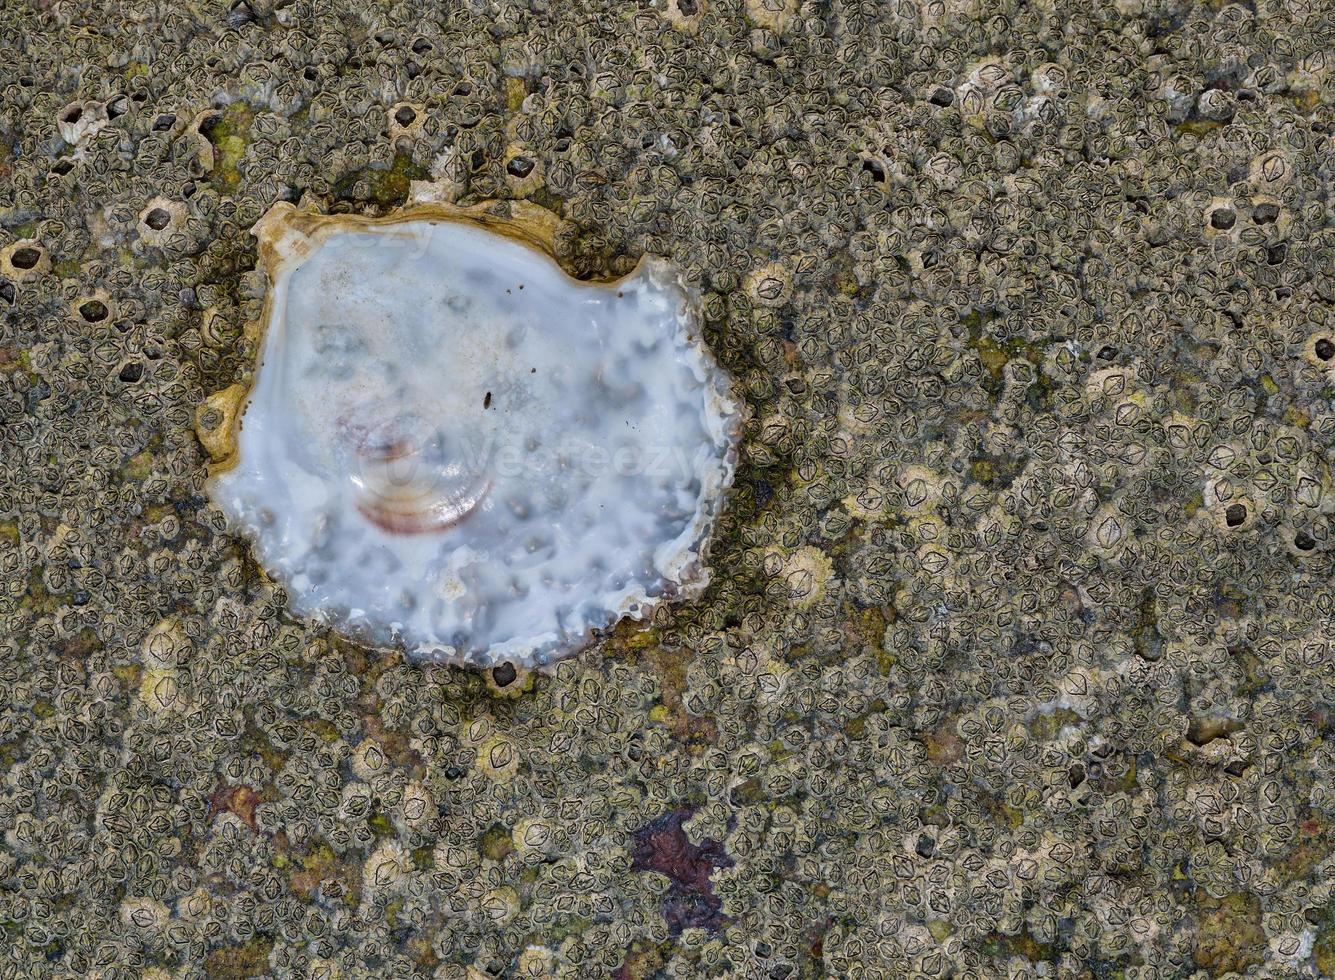 oester --magallana gigas-- schelp en eikel- zeepokken --semibalanus balanoides-- samen Aan een steen, noorden zee, duitsland foto